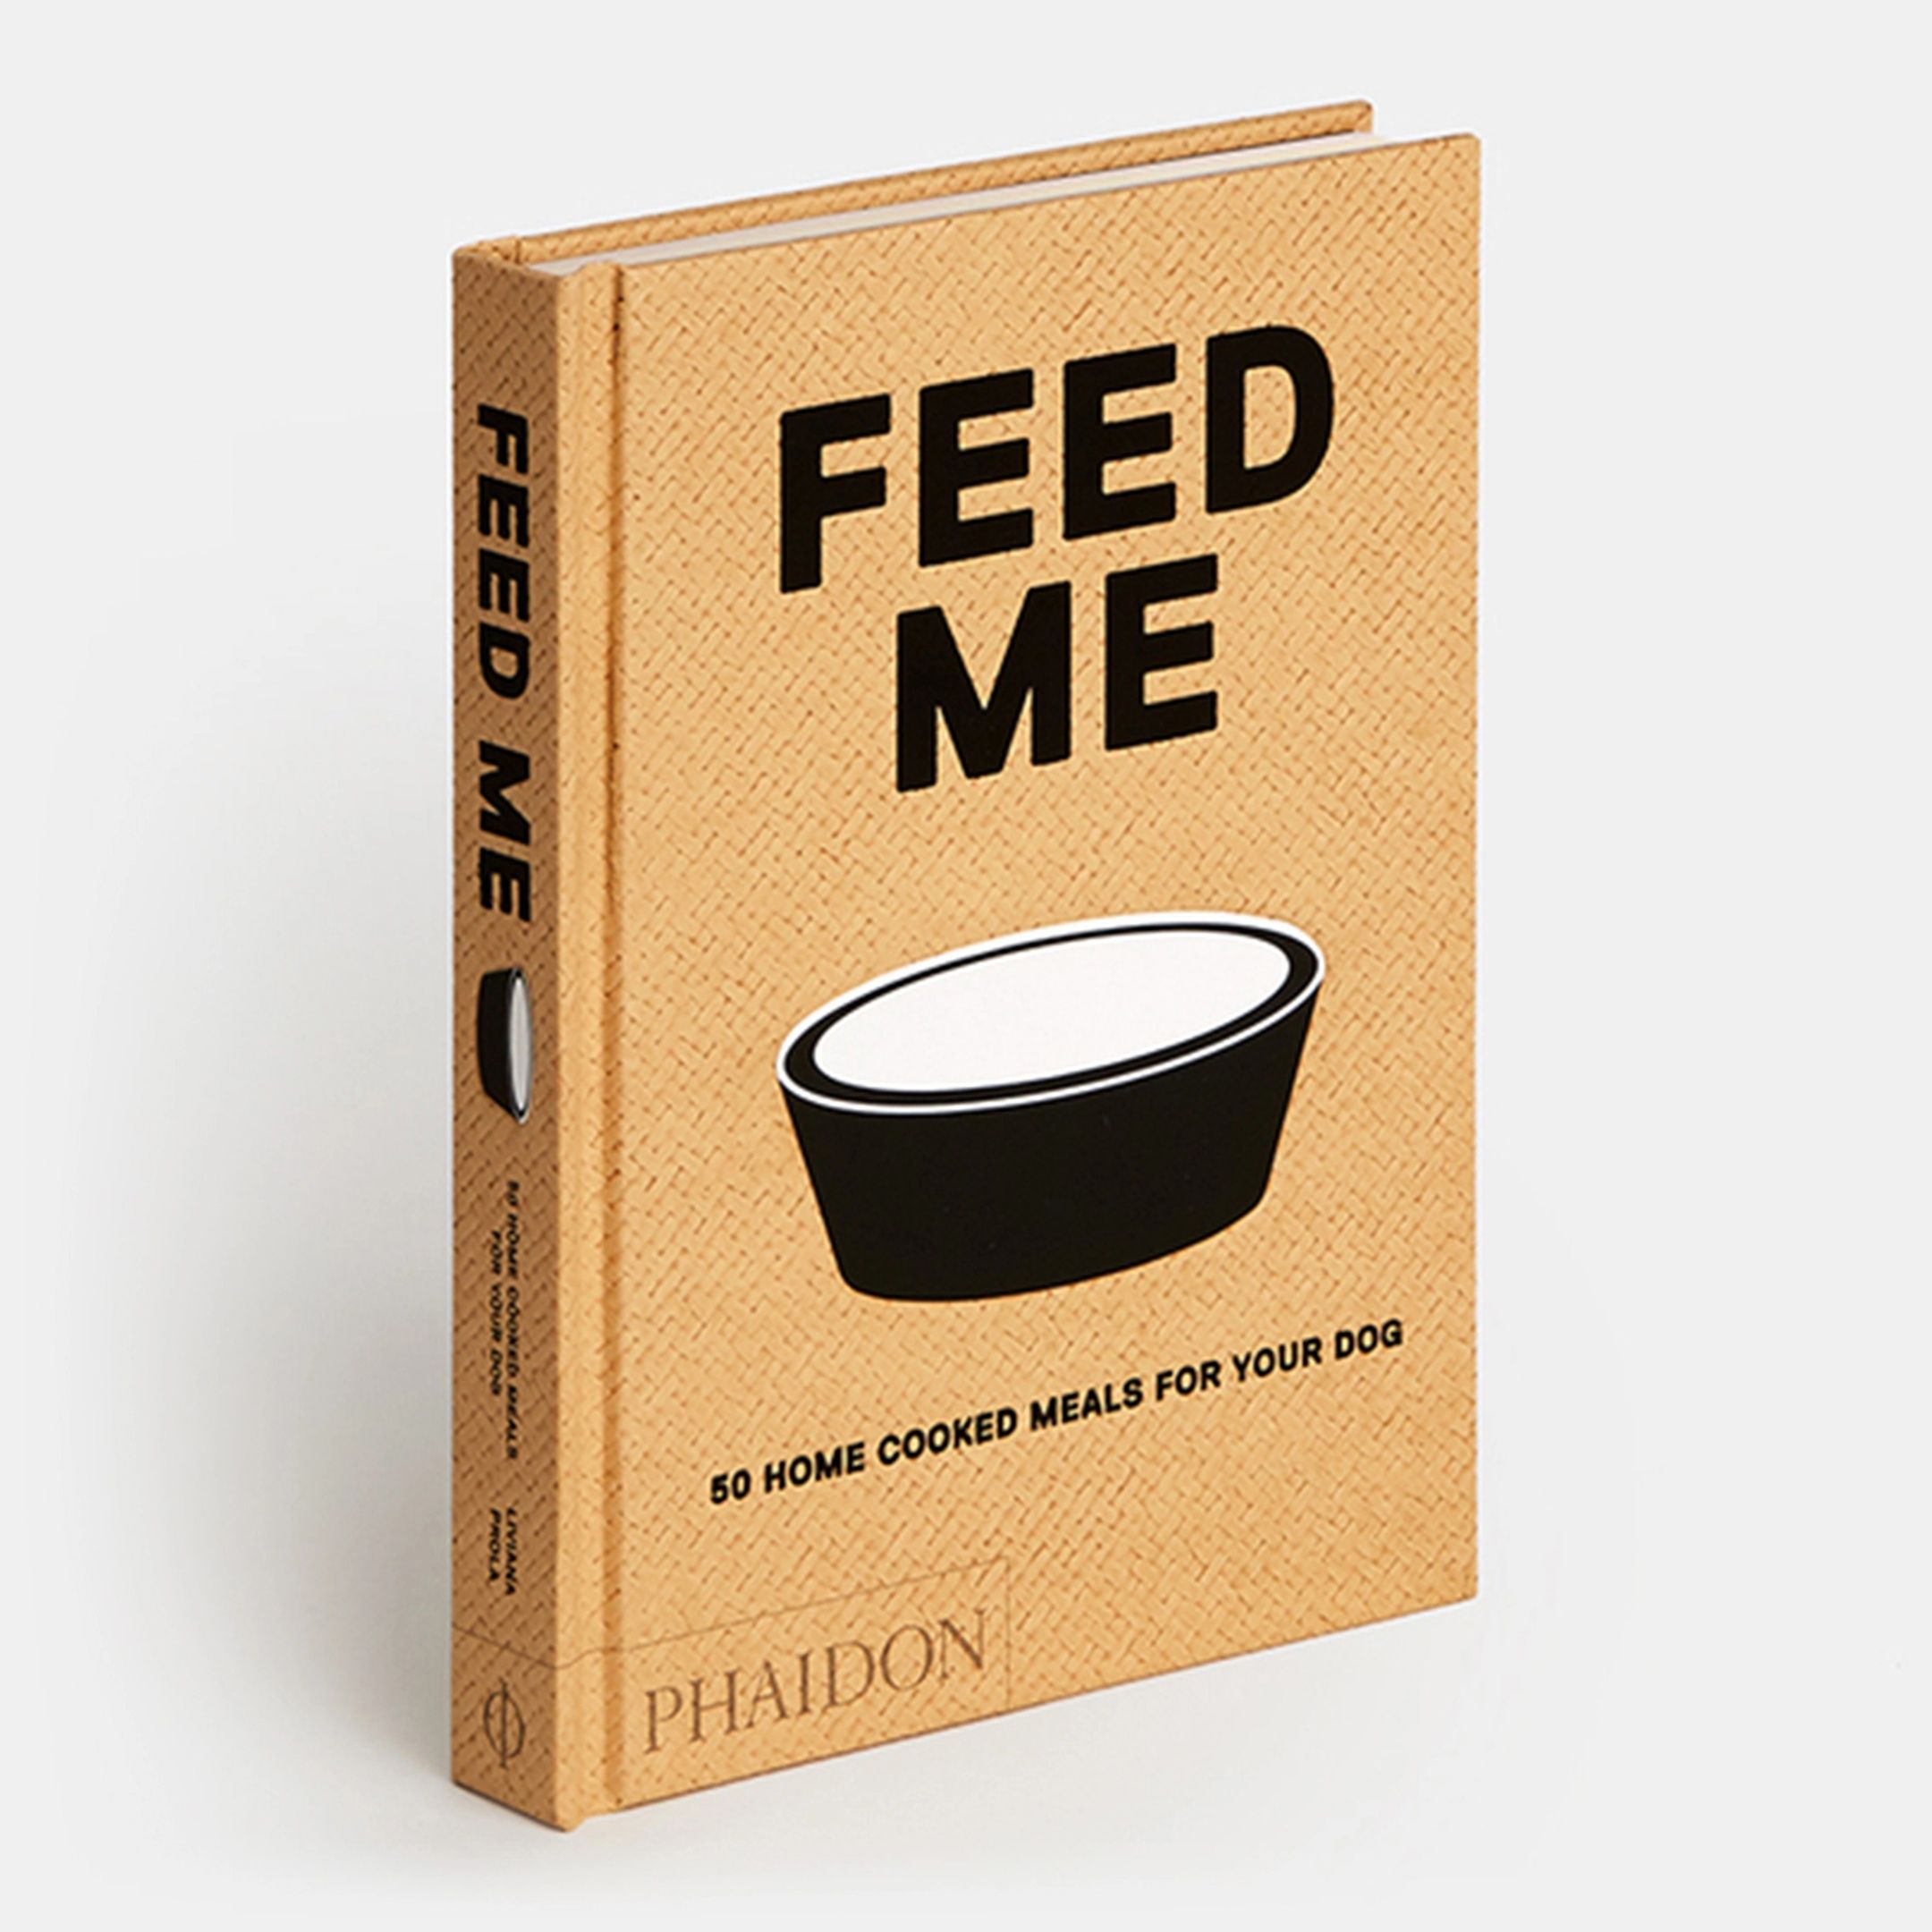 Feed Me by Liviana Prola feed me by liviana prola